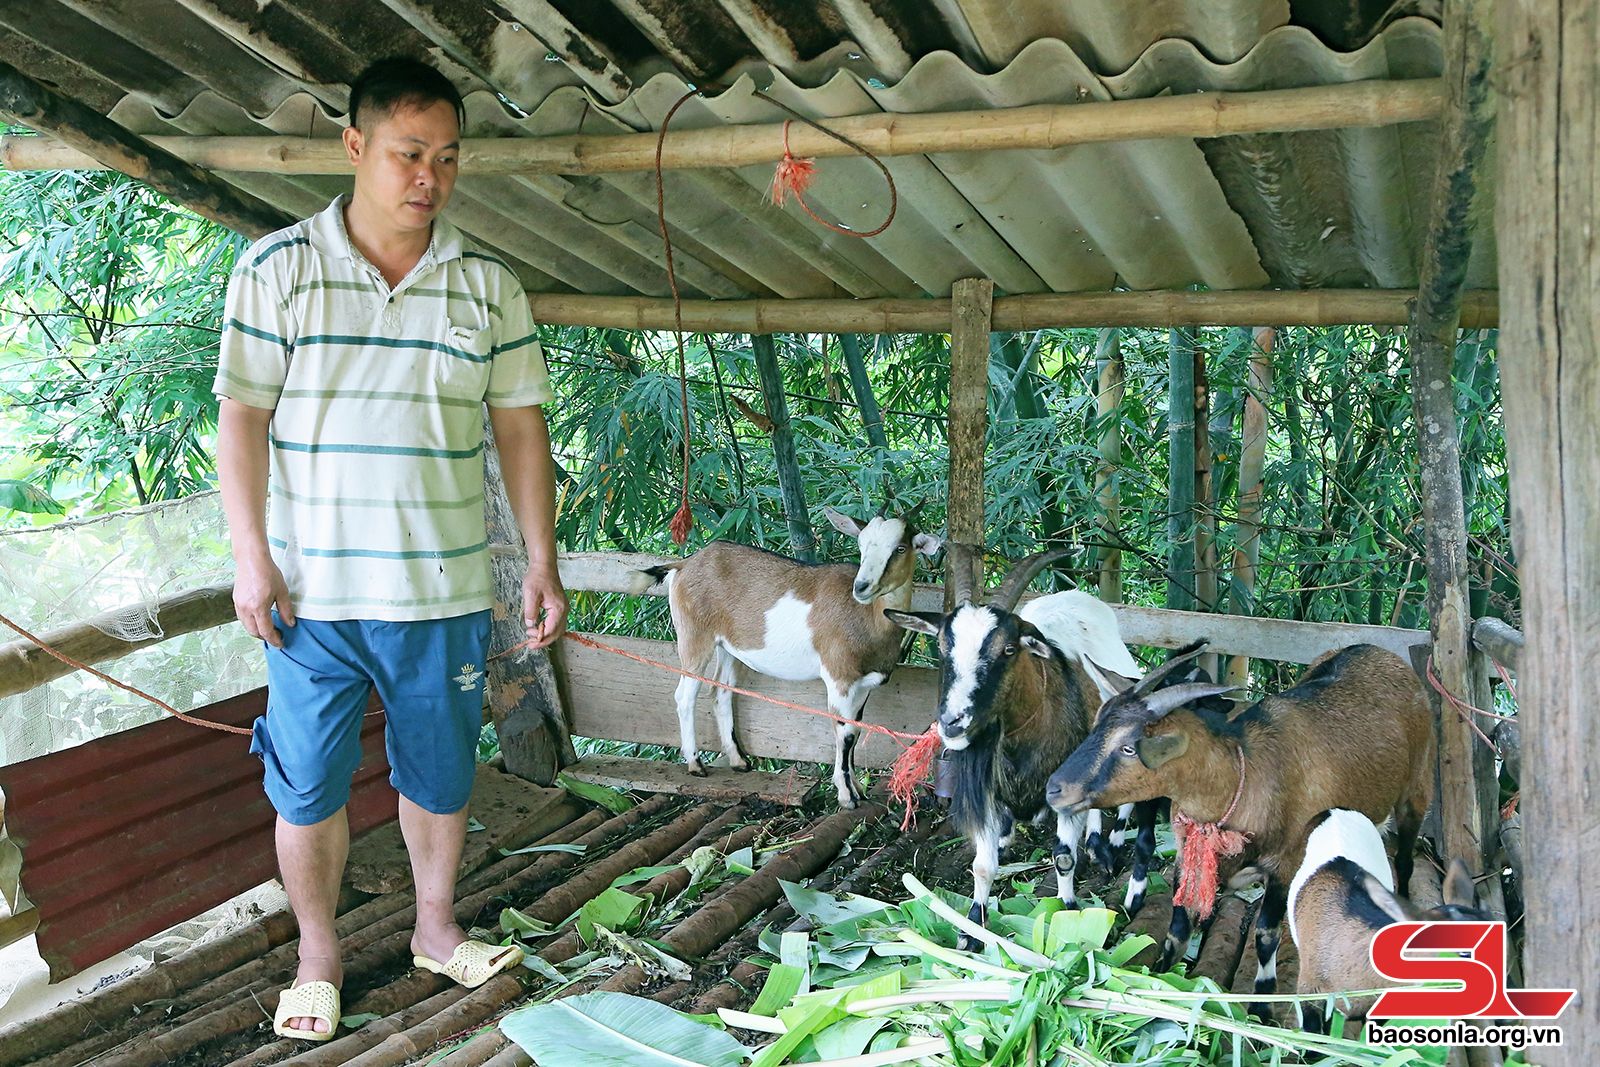 Nông dân huyện biên giới Hồng Ngự có thêm thu nhập từ nghề nuôi dê thịt   Kinh nghiệm làm ăn  Báo ảnh Dân tộc và Miền núi